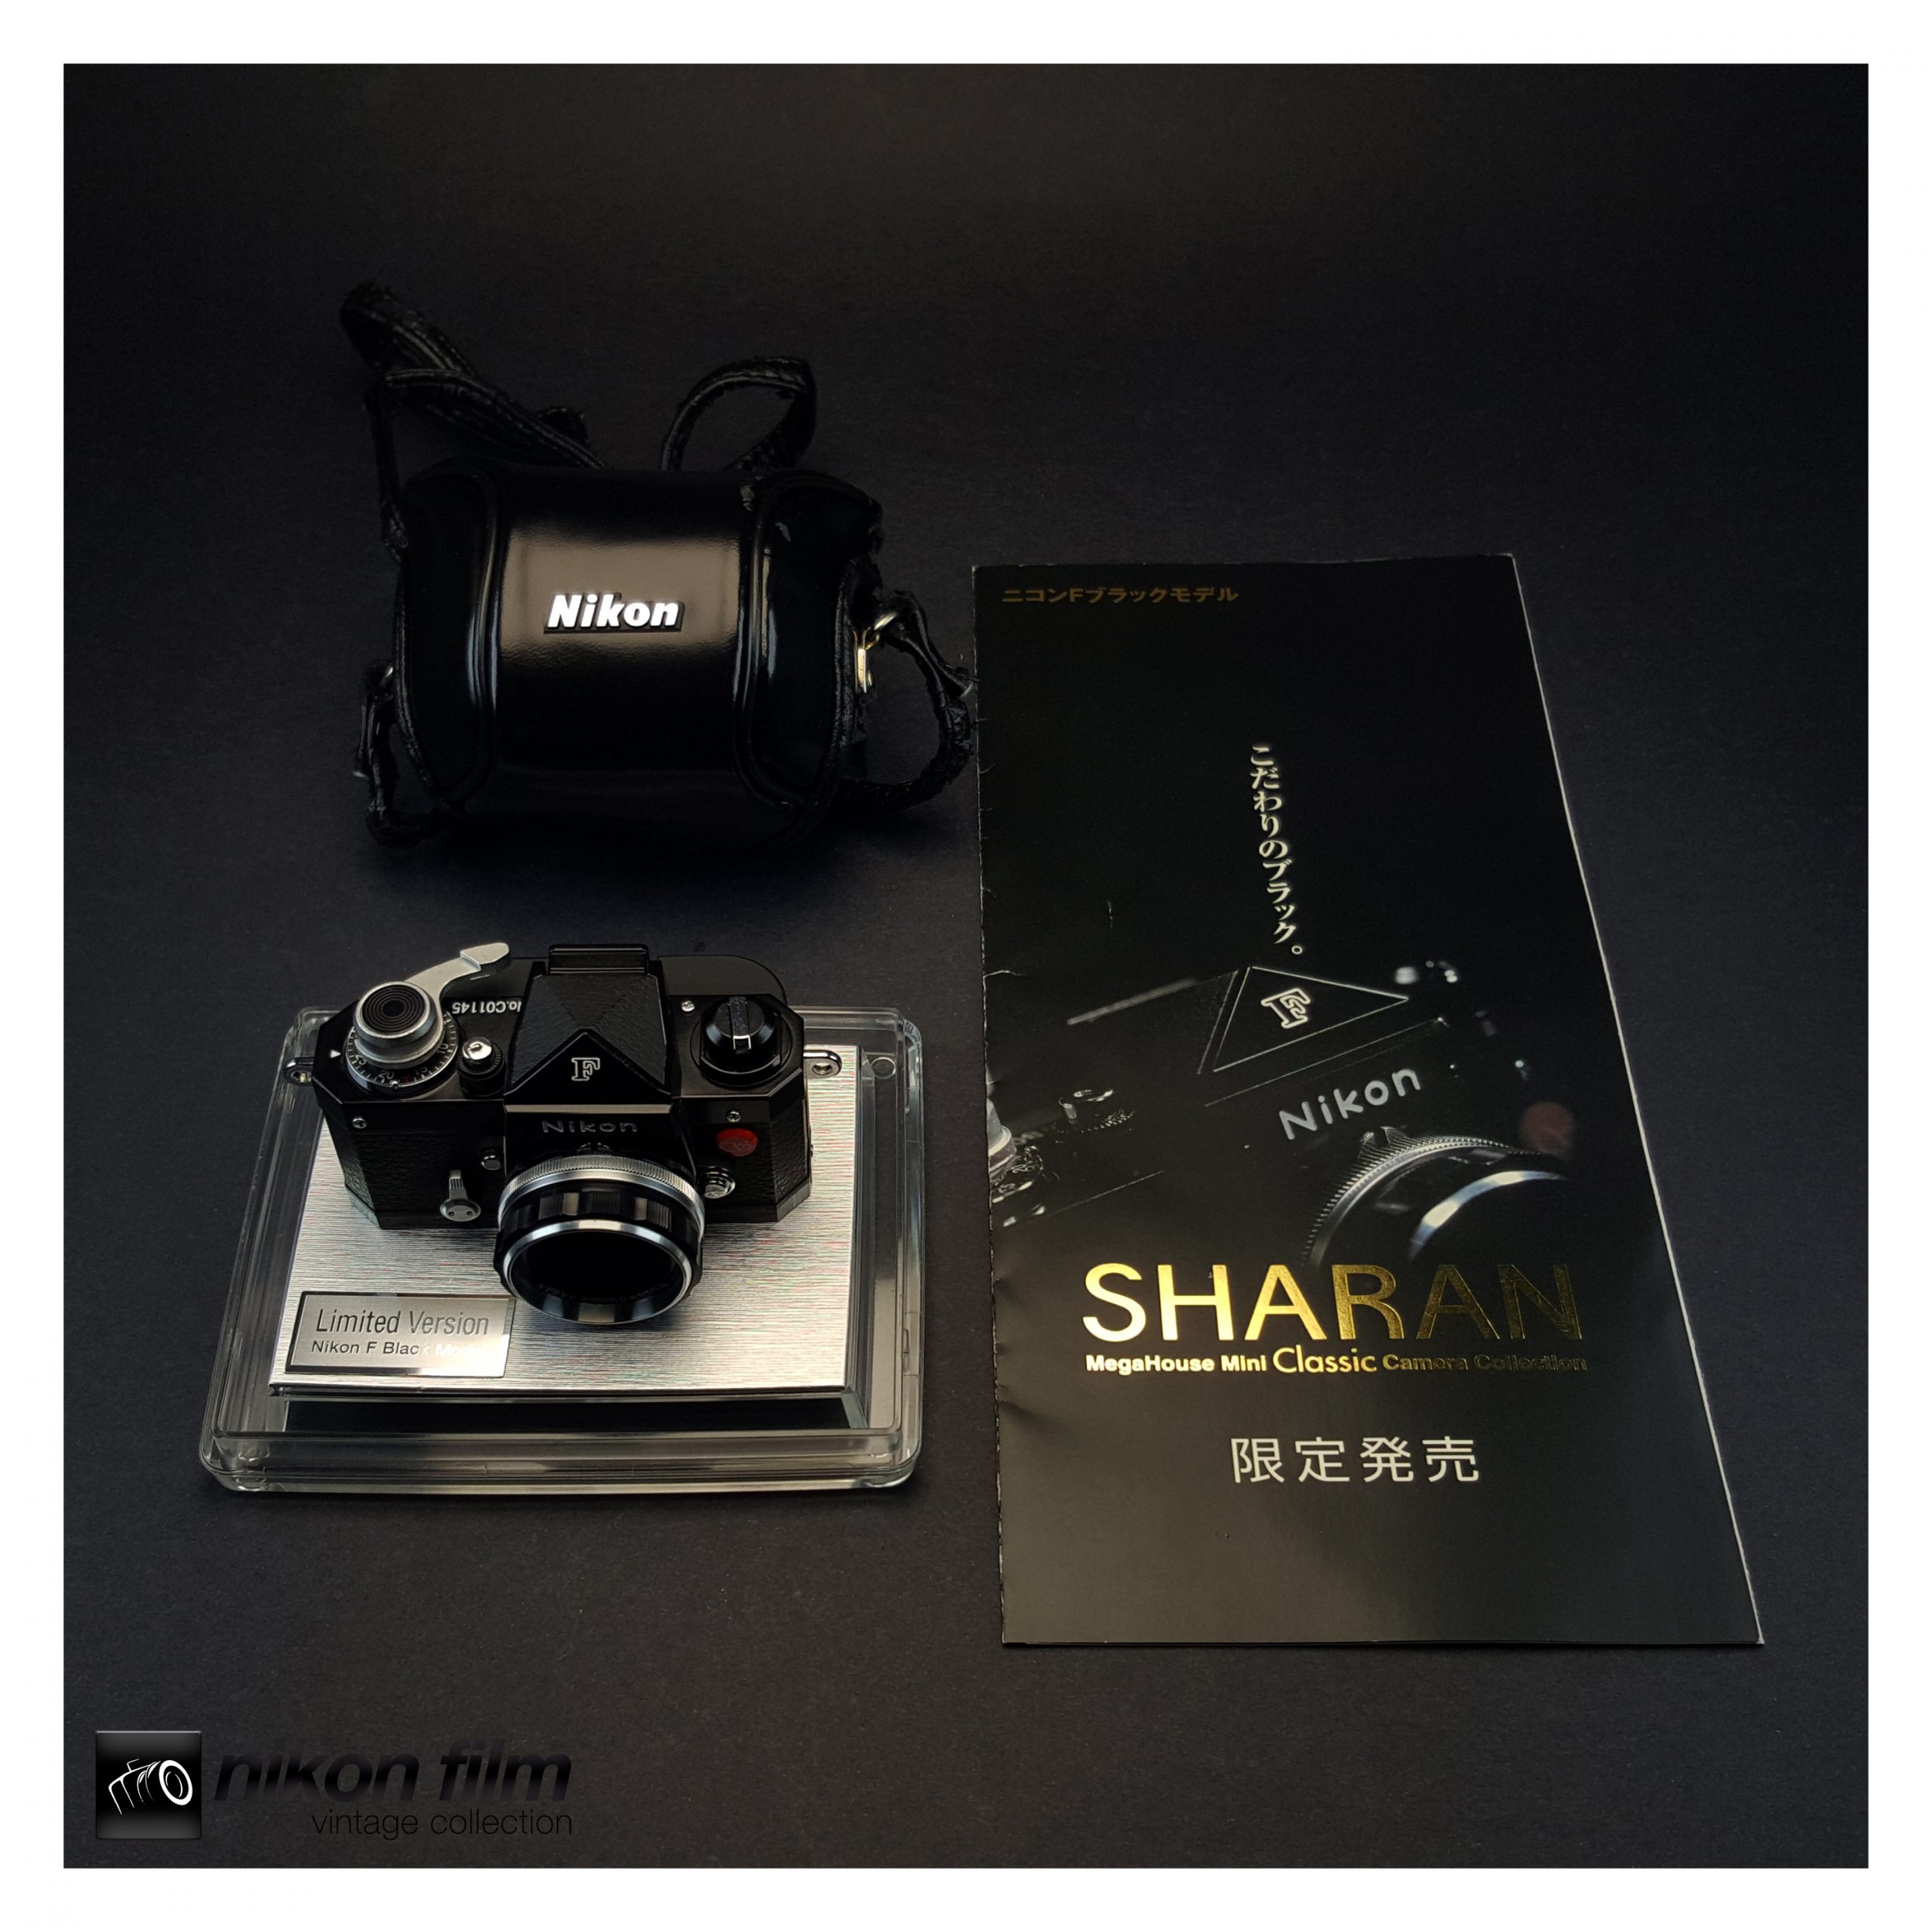 Sharan Minox Miniature Nikon F Camera (Limited to 5,000) - Black